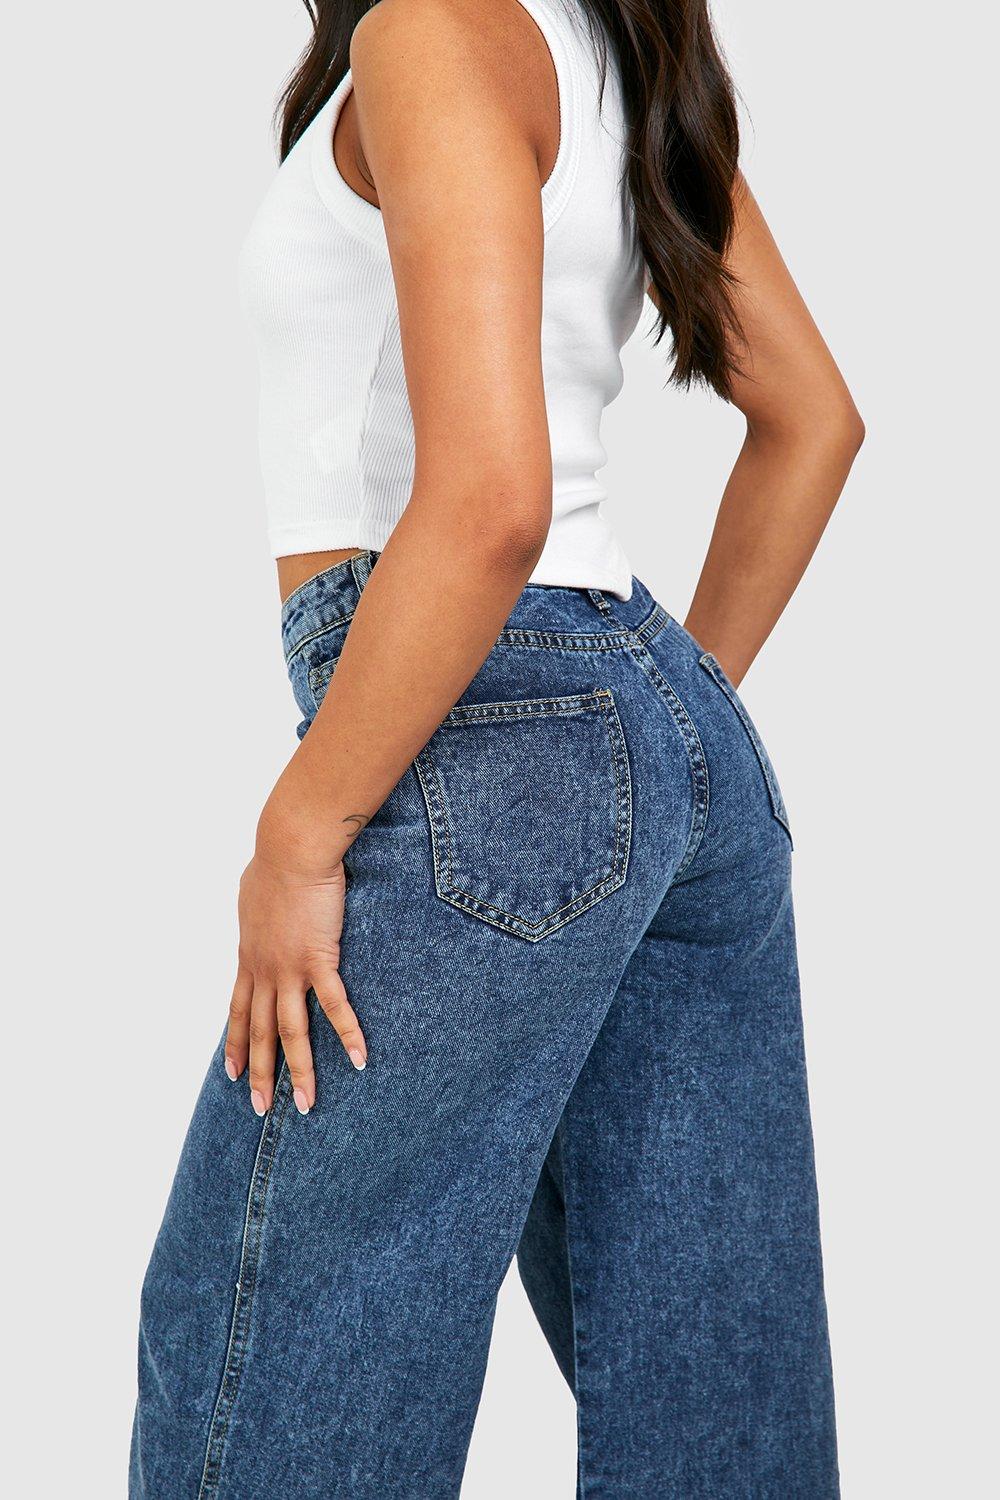 New Vintage Split Hem Jeans in Medium Wash - Denim